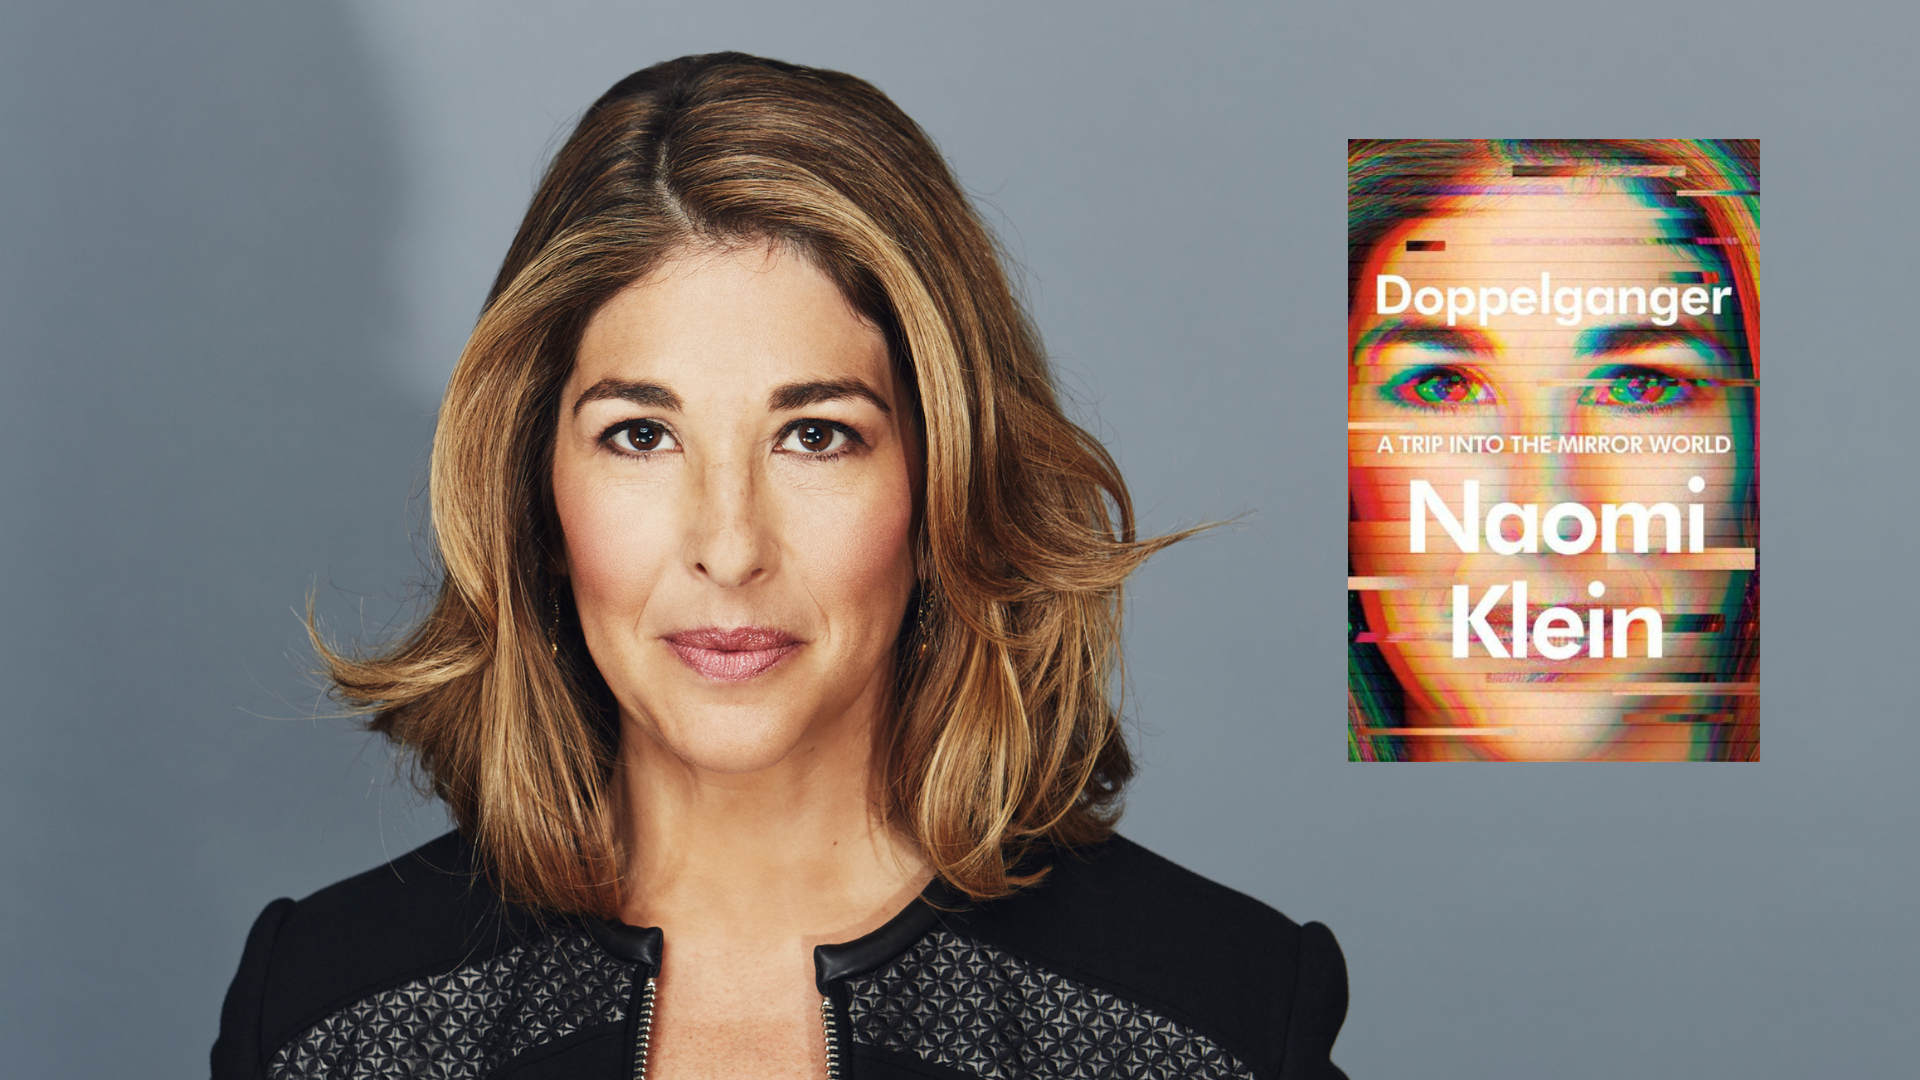 Cómo es “Doppelganger”, el libro más personal de Naomi Klein 